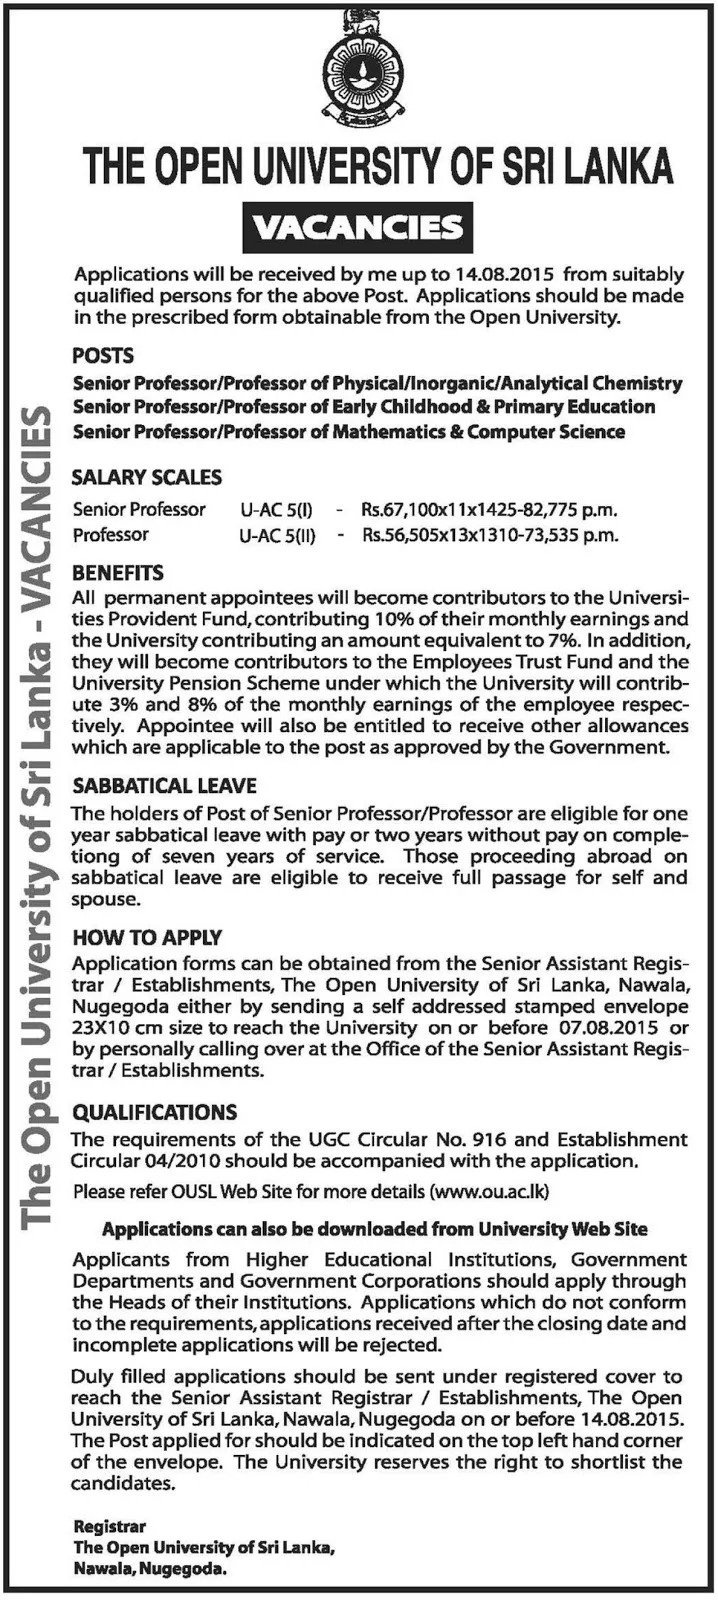 Jobs Vacancies in OUSL Sri Lanka